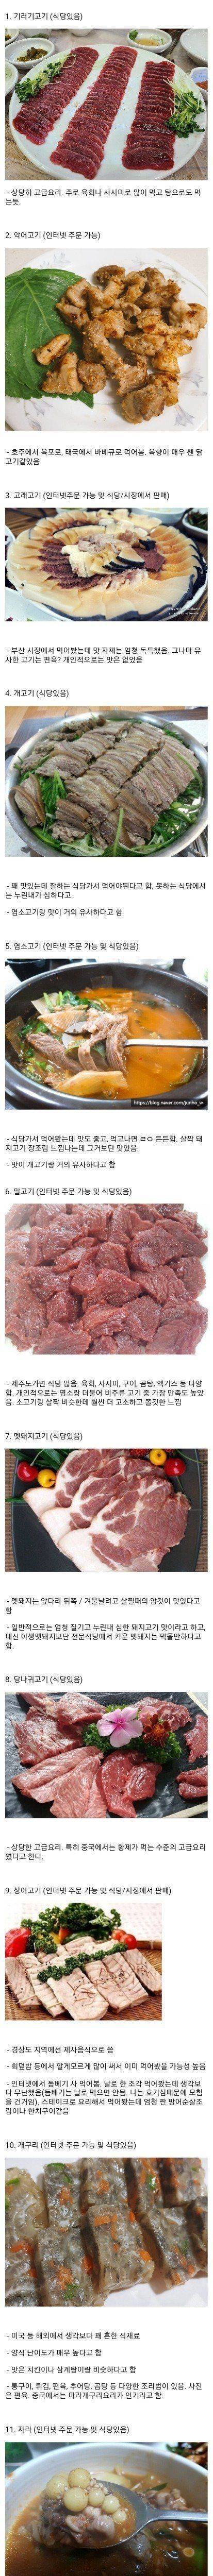 18 한국에서 먹을 수 있는 고기 종류.jpg